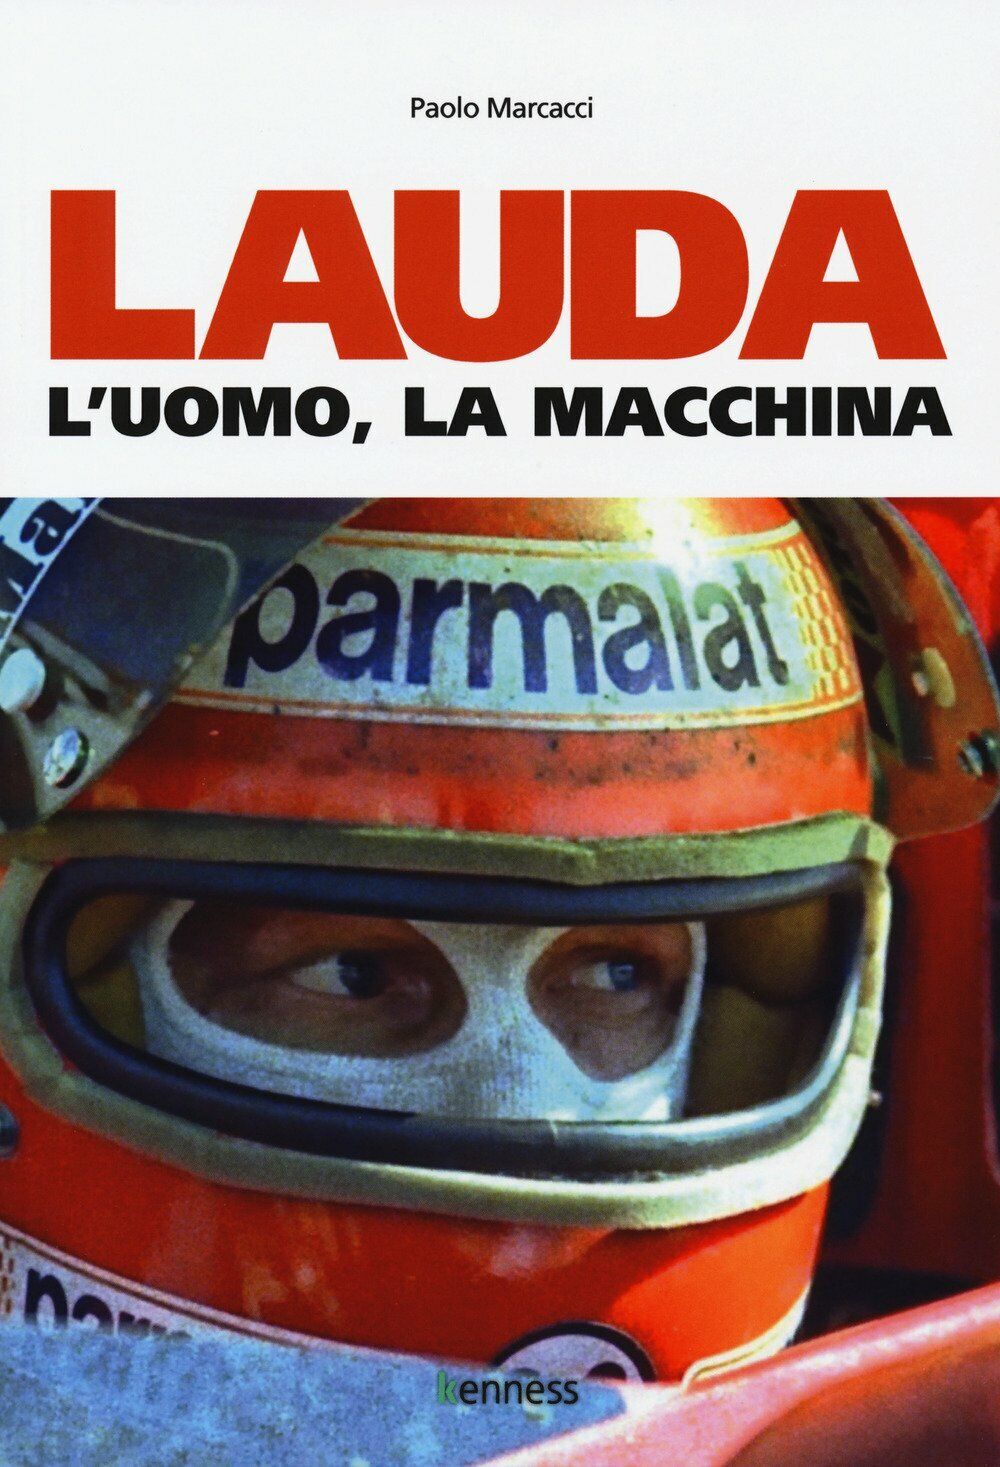 Lauda. L'uomo, la macchina - Paolo Marcacci - Kenness, 2018 libro usato